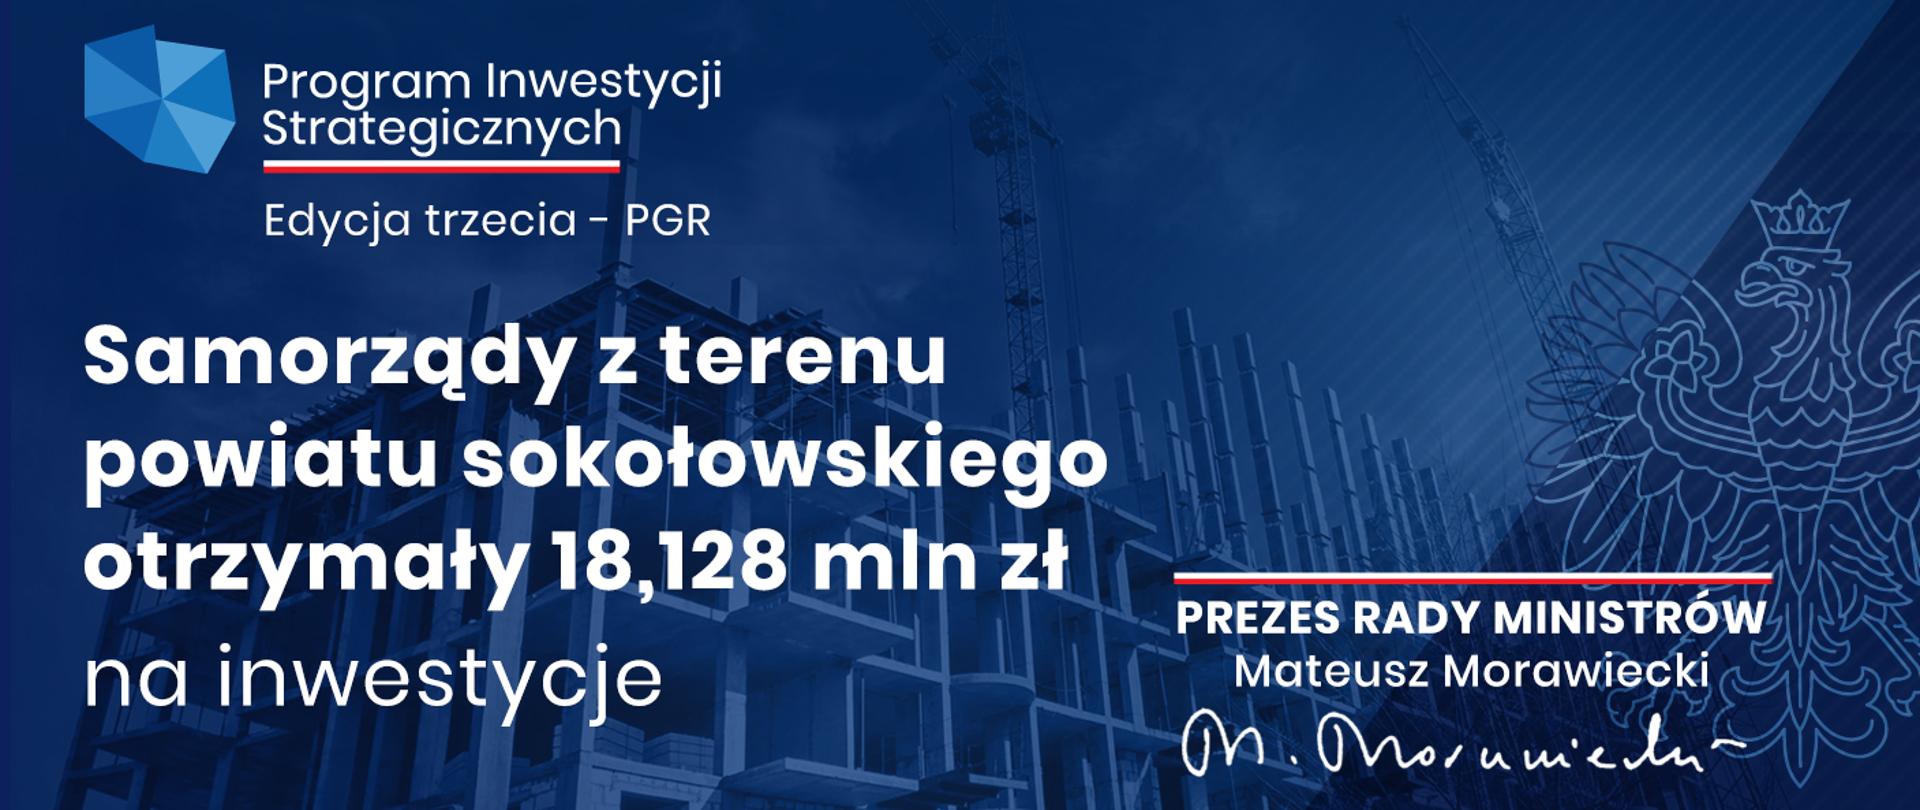 Program inwestycji Strategicznych Polski Ład granatowa grafika z białymi napisami Samorządy z terenu powiatu sokołowskiego otrzymały 18,128 mln zł na inwestycje.